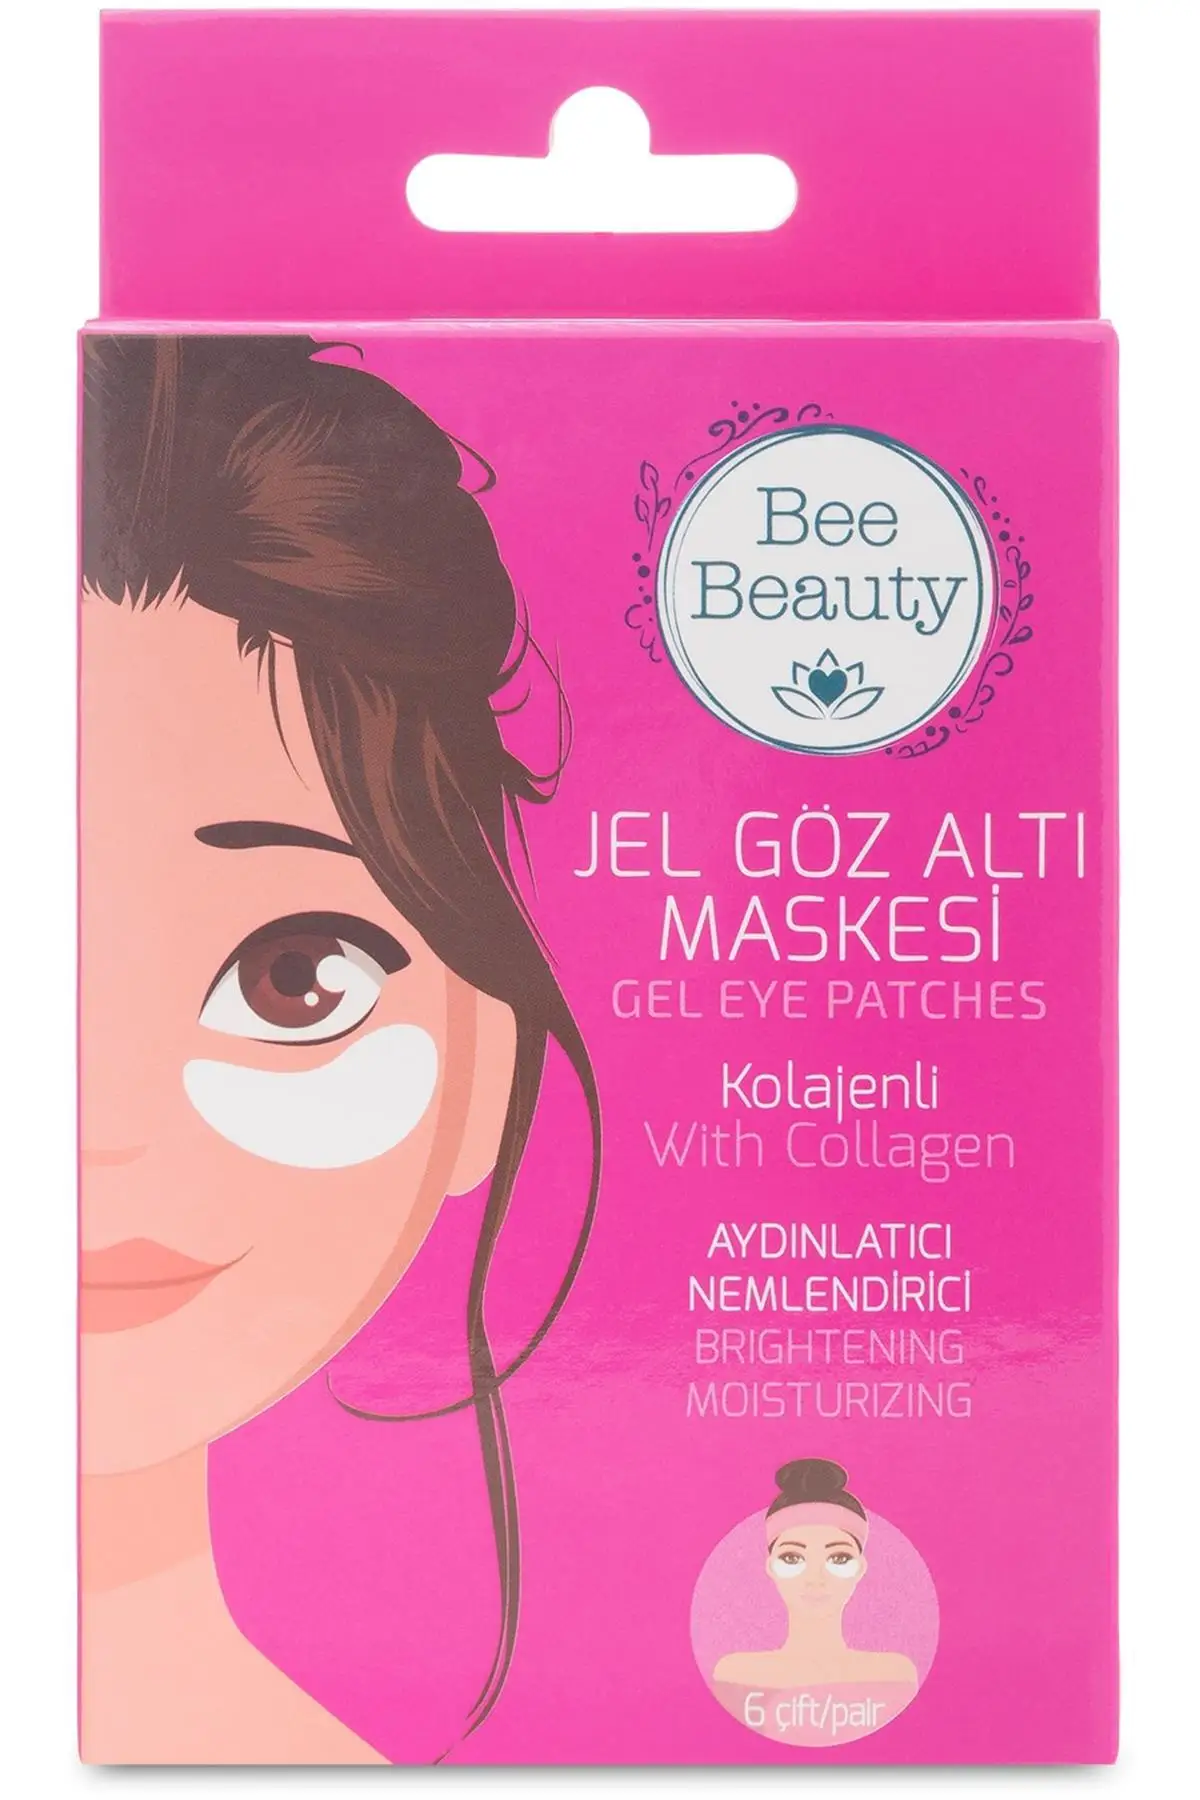 

Бренд: Bee Beauty Gel, маска для глаз Kolajenli, осветляющая и увлажняющая, Категория: маска для лица